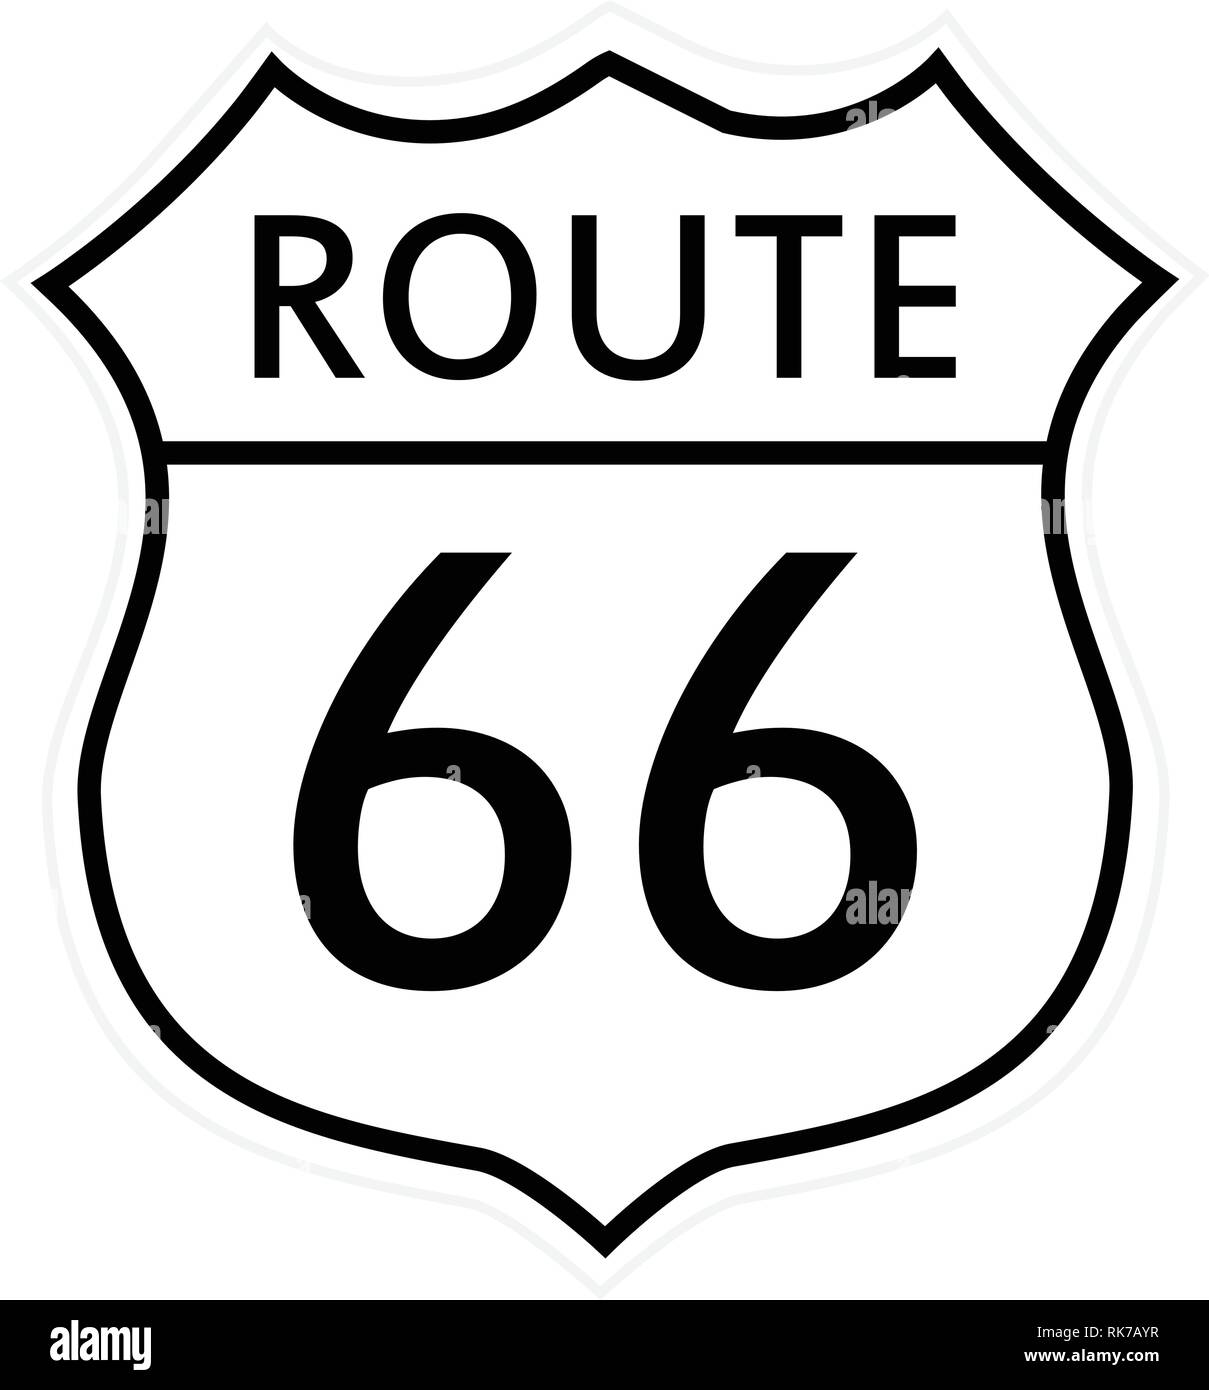 Straßenschild an der historischen Route 66. Route 66 Schild  Stock-Vektorgrafik - Alamy